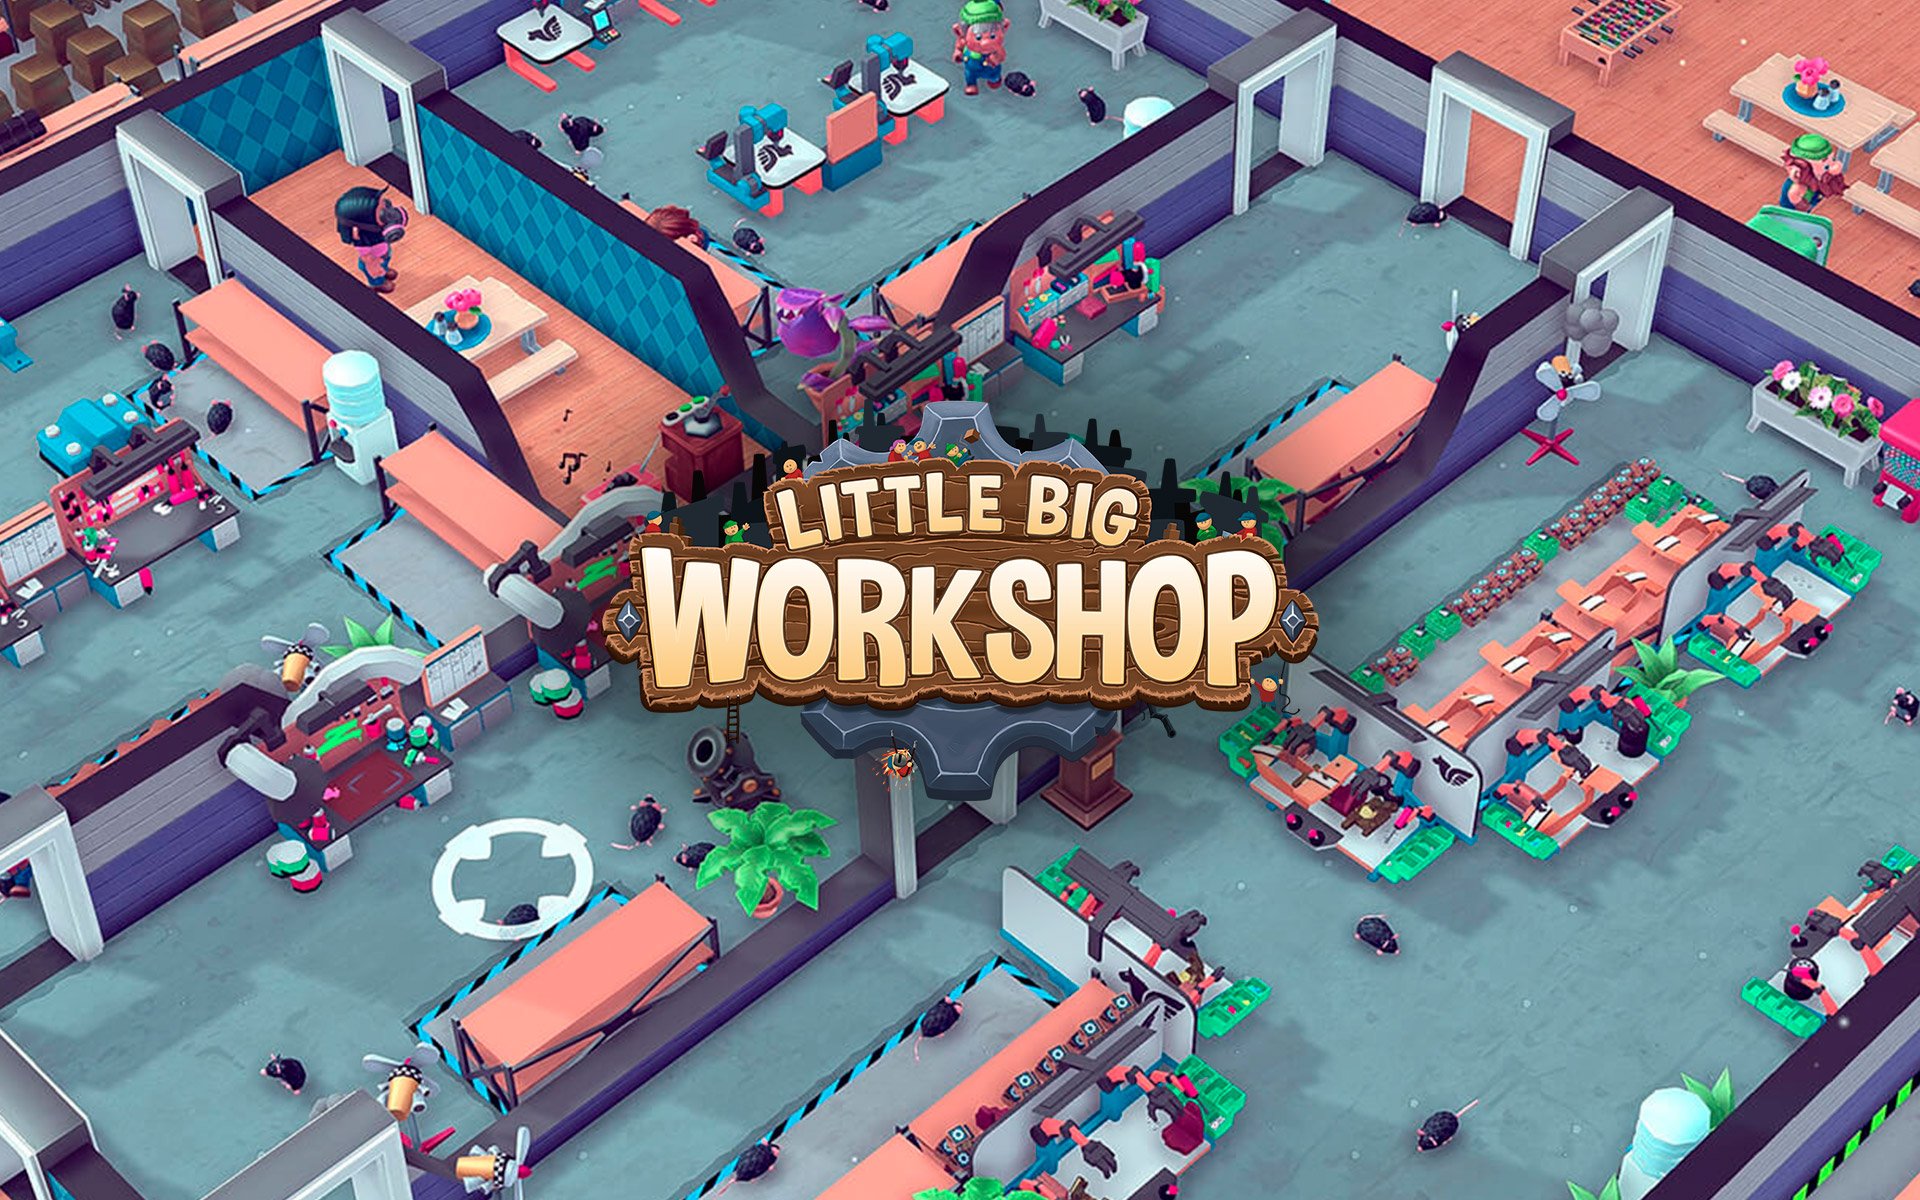 Compre Little Big Workshop a partir de R$ 54.99